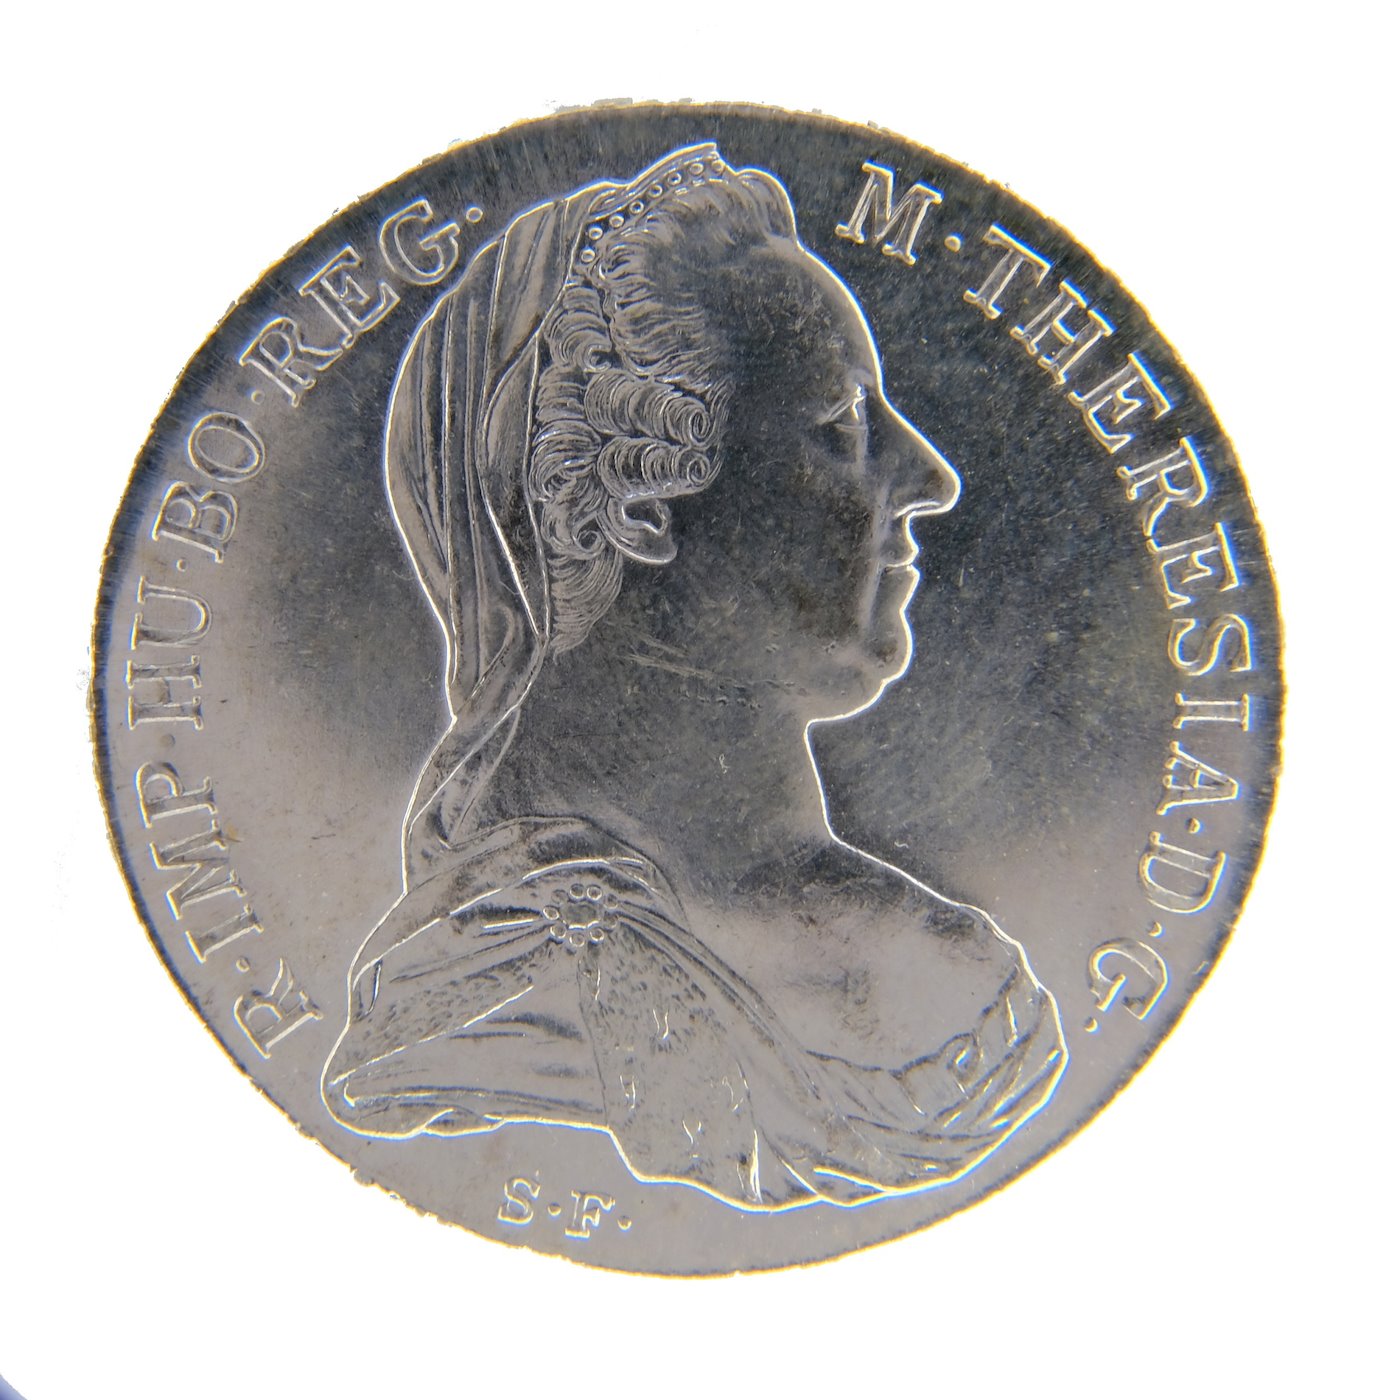 .. - 3 KUSY. Rakousko Uhersko stříbrný Tolar Marie Terezie 1780 SF obchodní tolar pokračující ražba, stříbro  833/1000, hrubá hmotnost 84,21g.